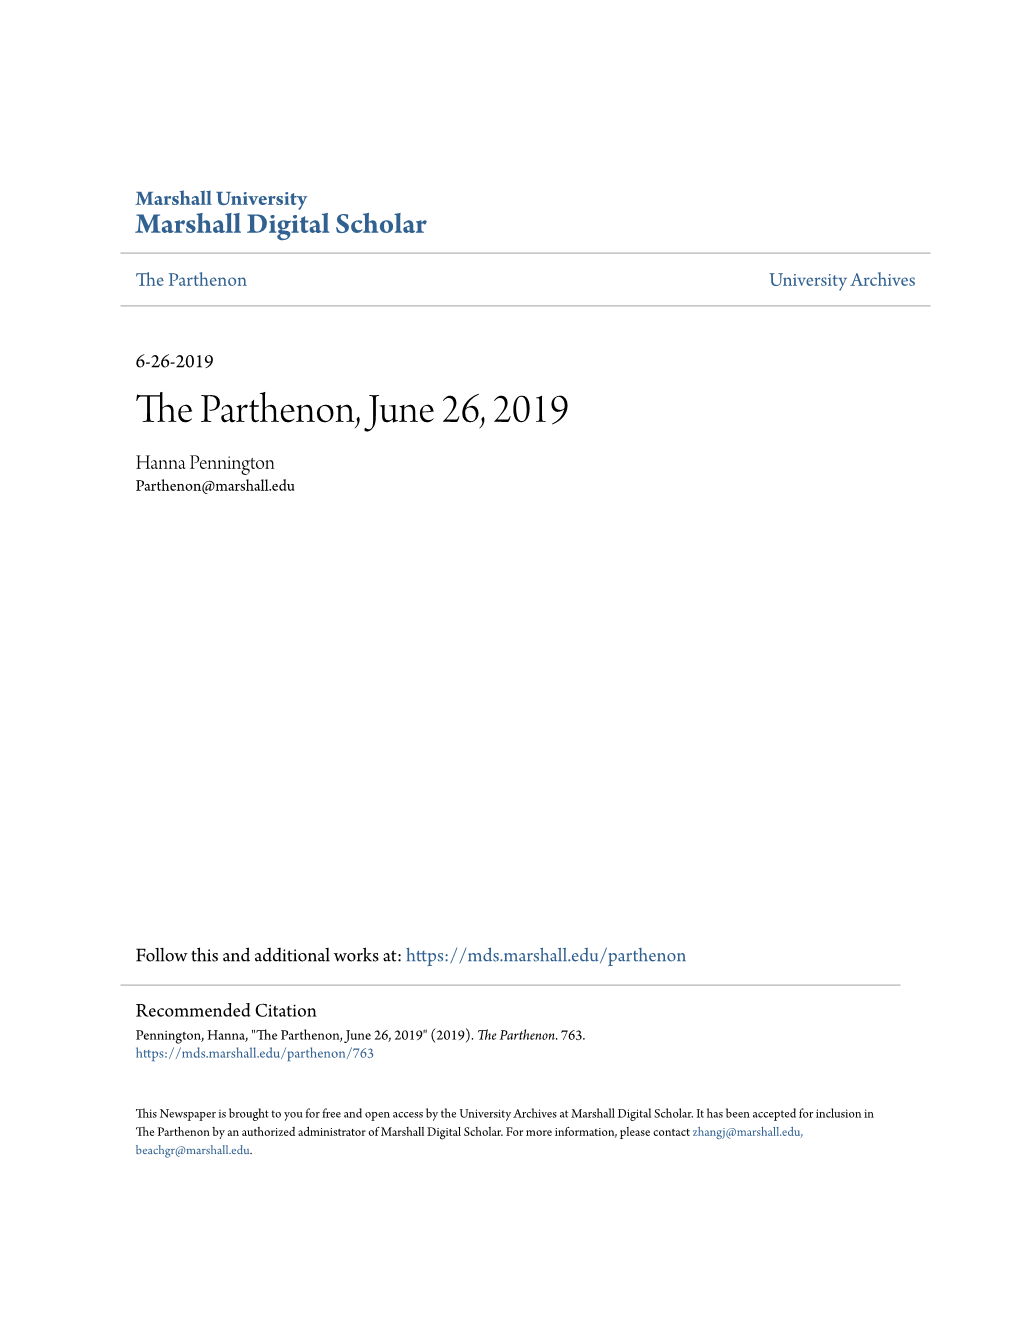 The Parthenon, June 26, 2019